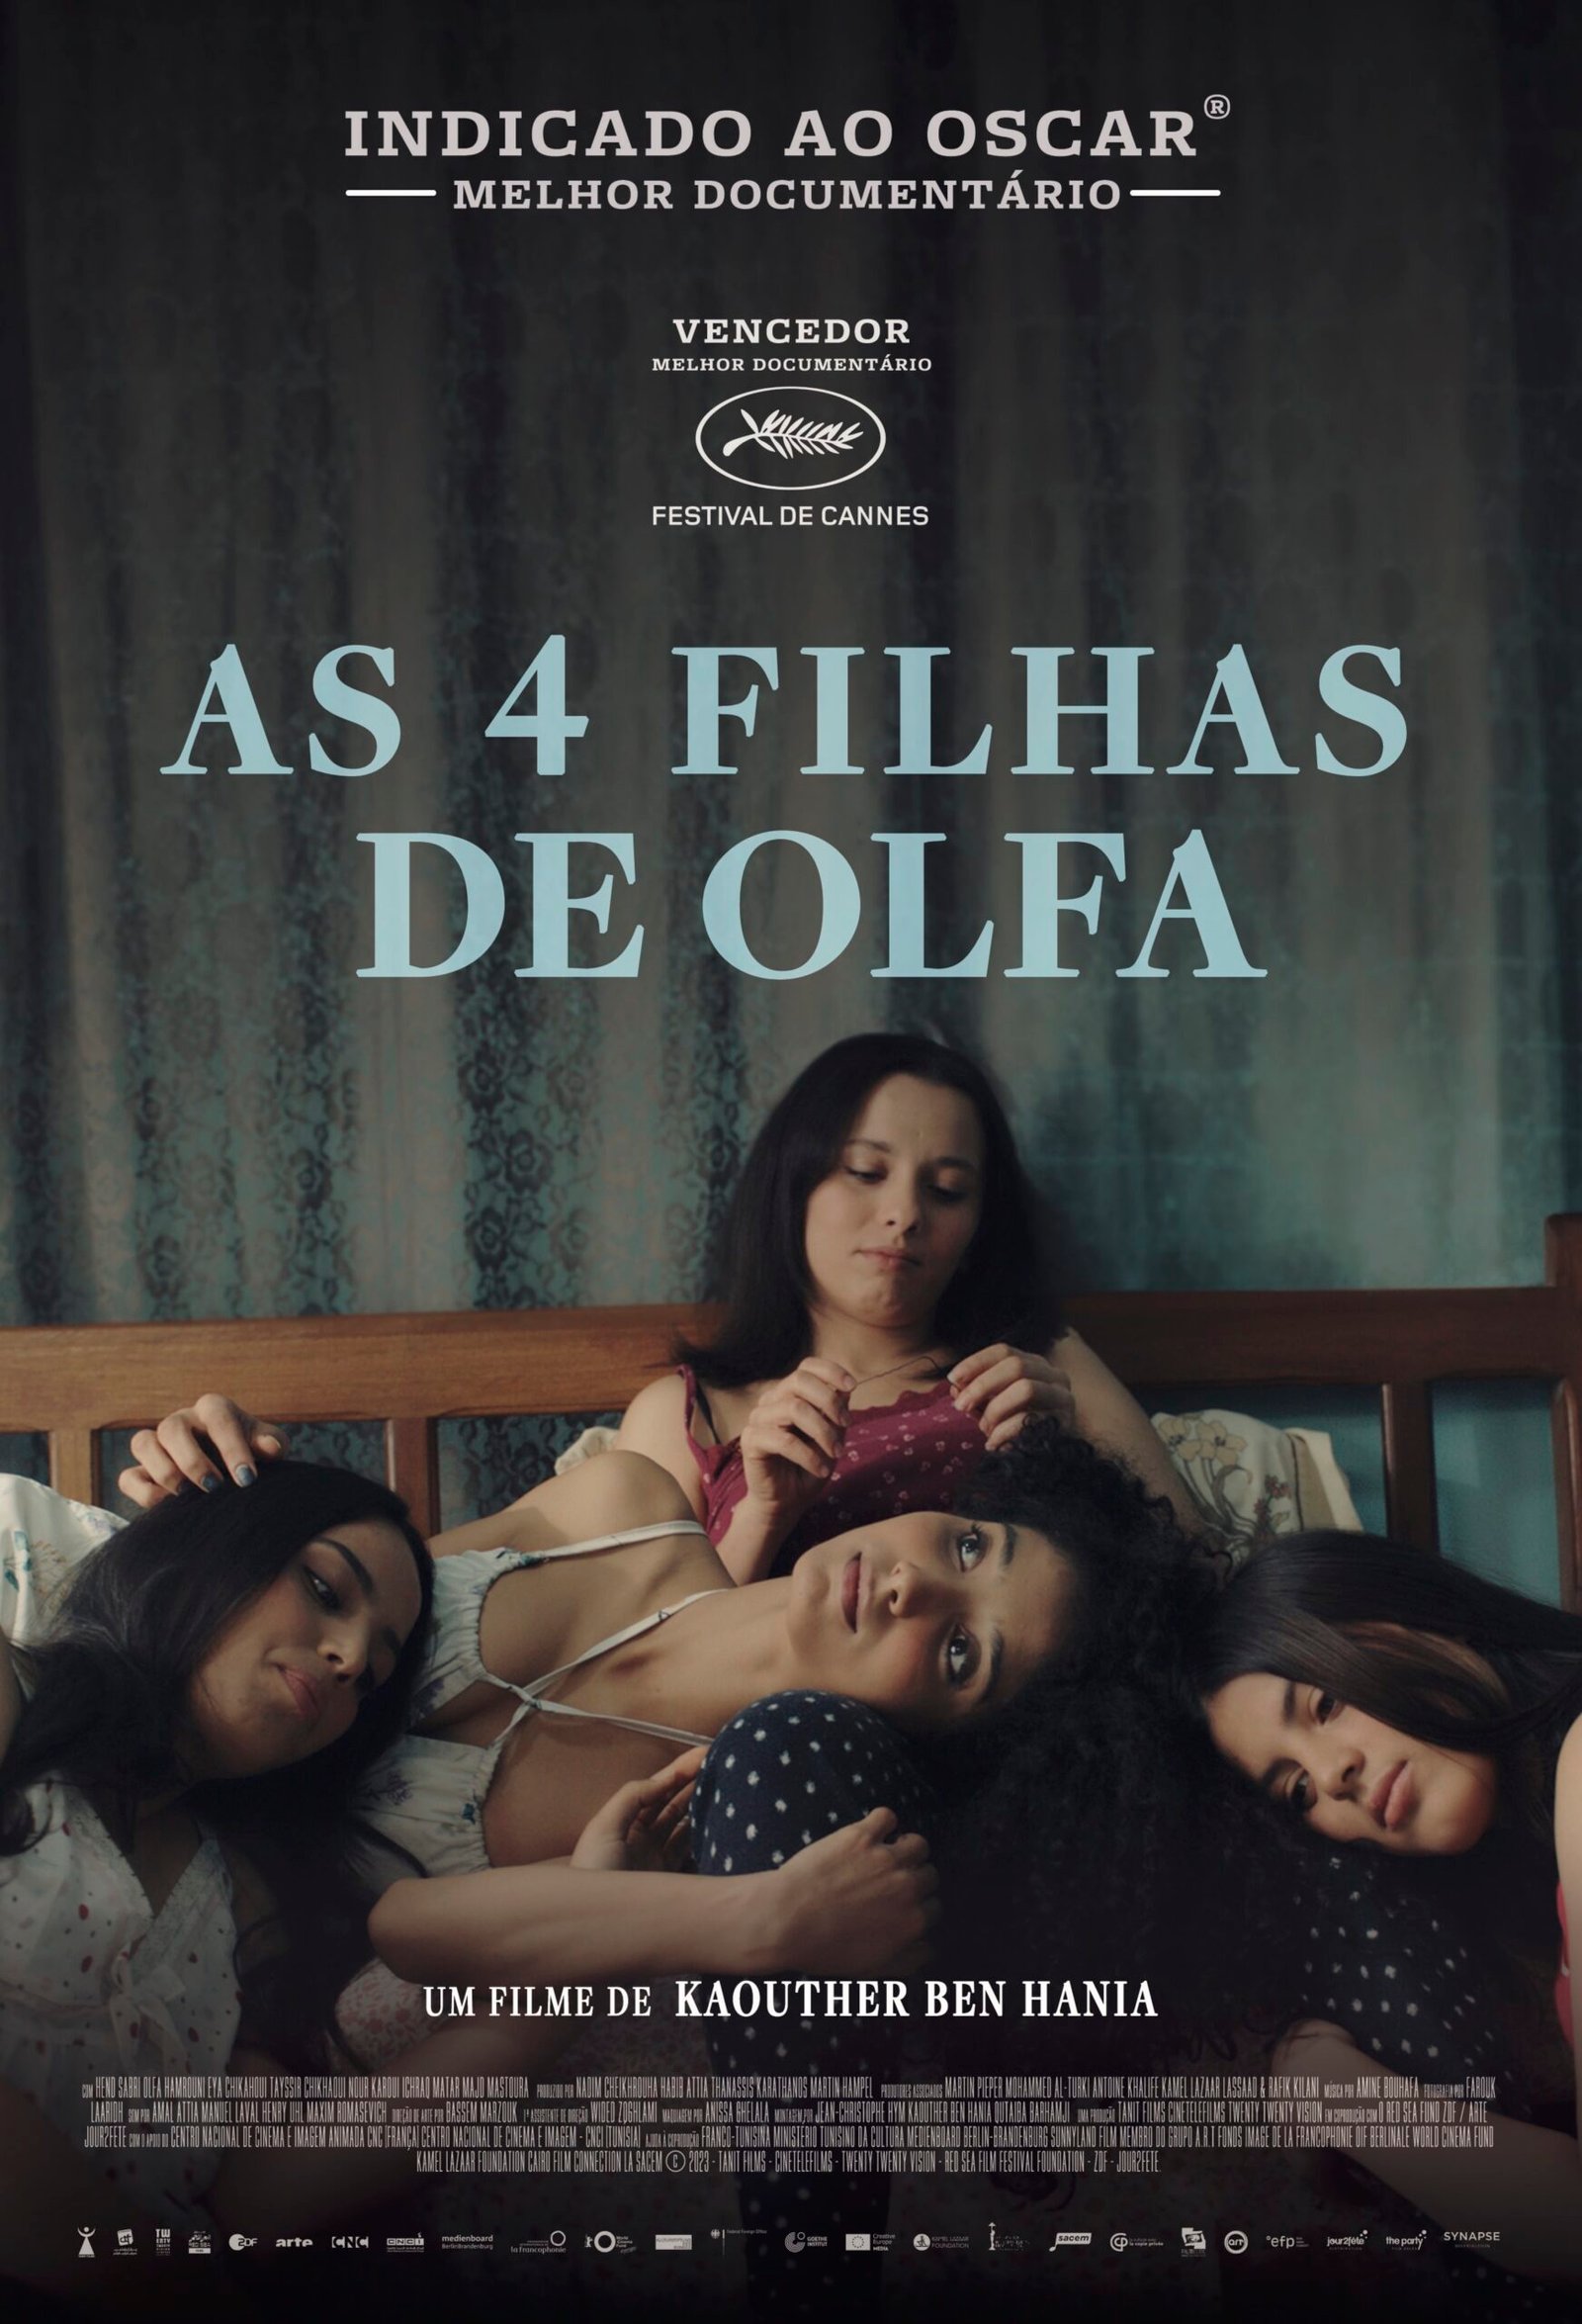 Indicado ao Oscar de melhor documentário, “As 4 Filhas de Olfa” estreia no Brasil em 7 de março